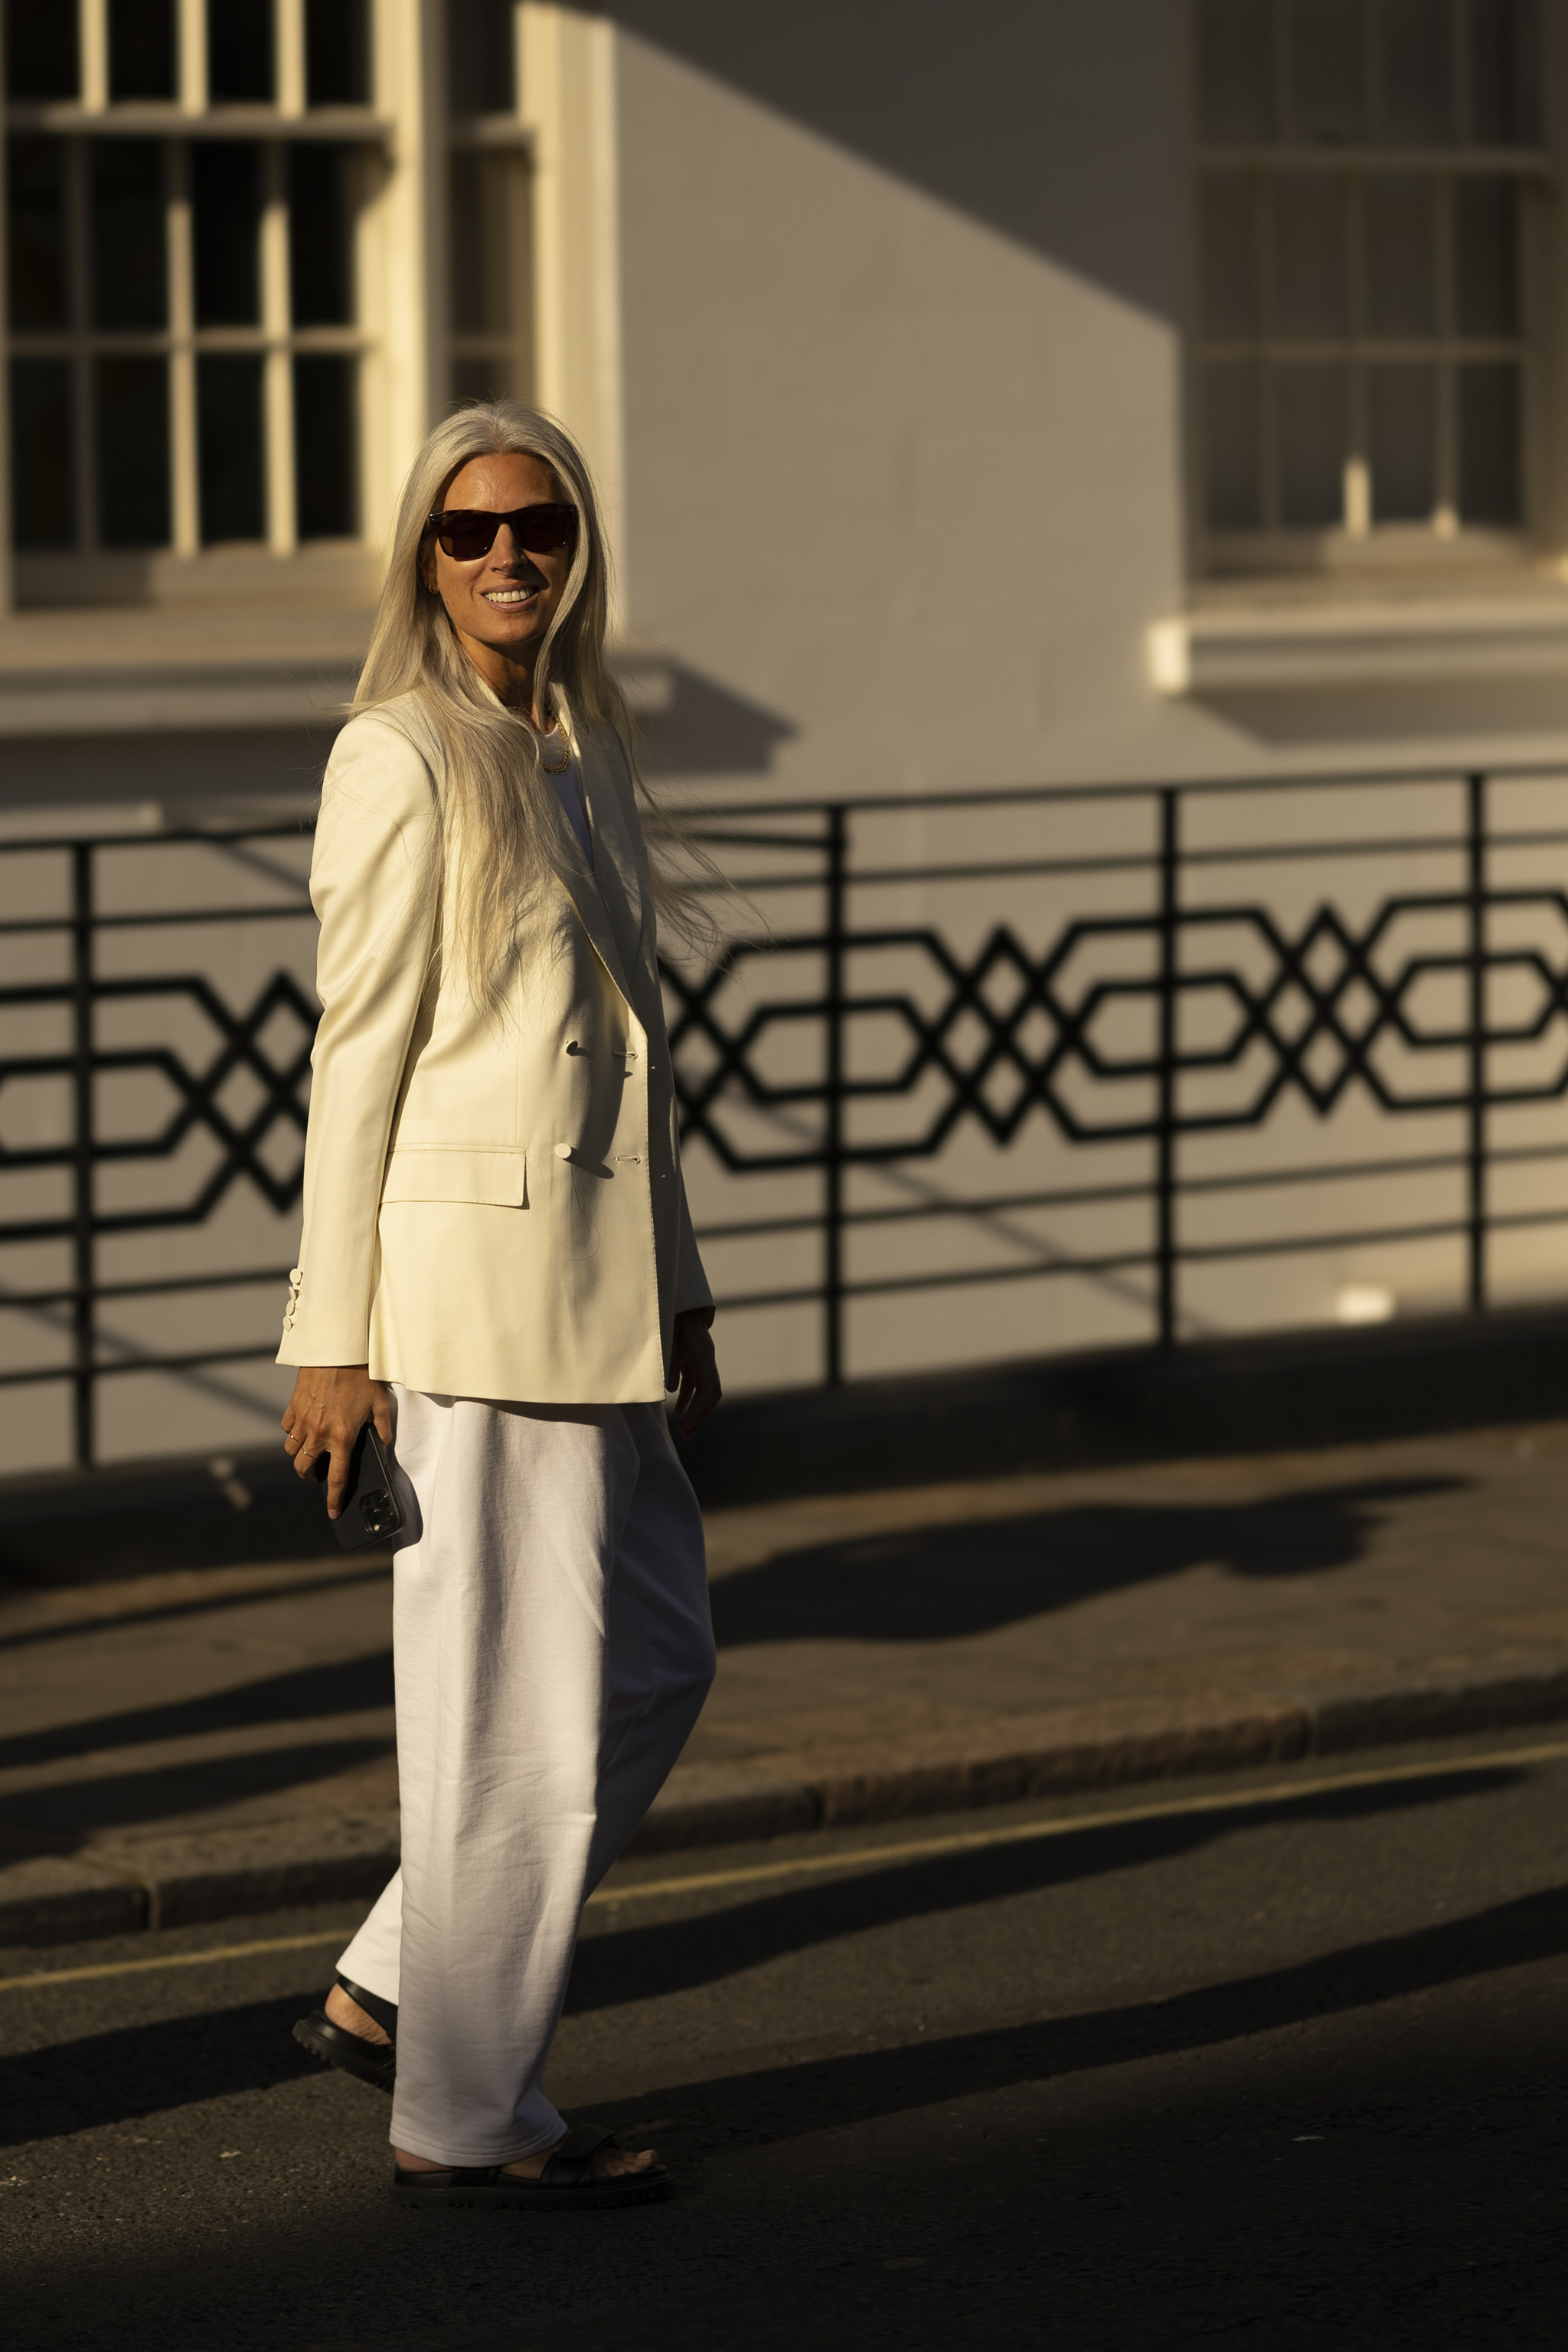 Sarah Harris con blazer color crudo por las calles de Londres.